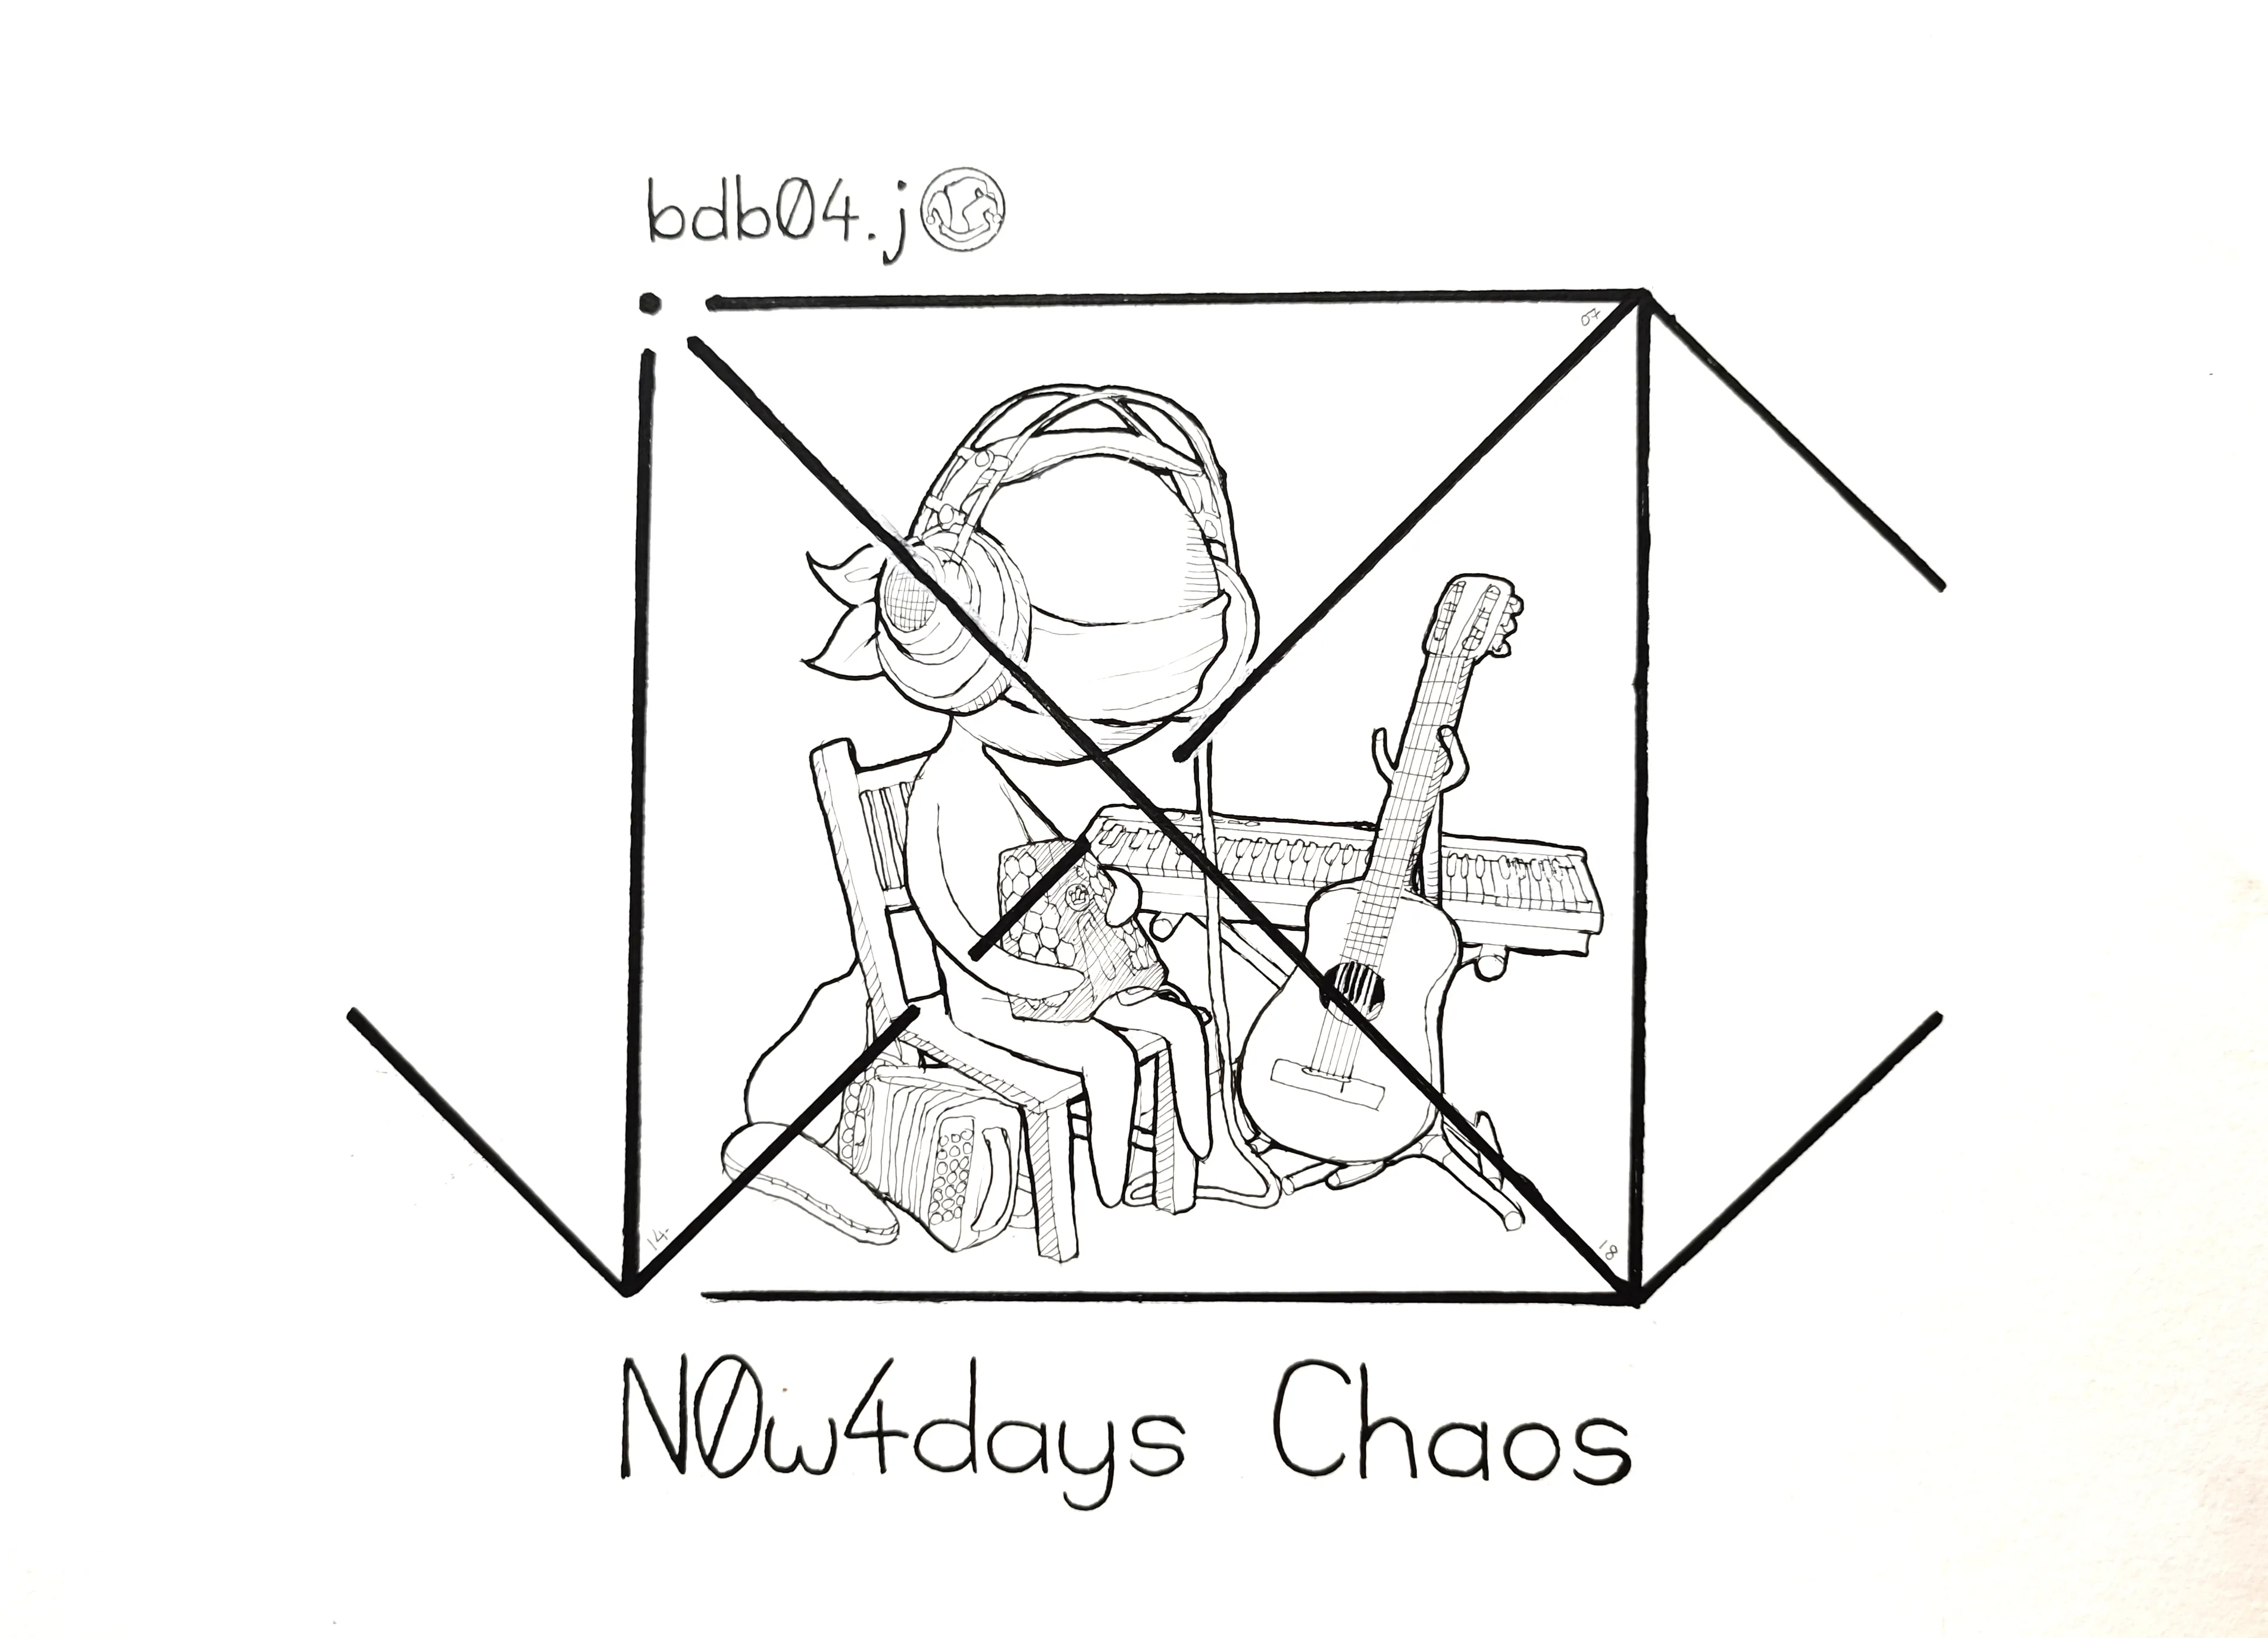 le zoli dessin « N0w4days Chaos » que j'ai bilouté le 14 juillet 2018